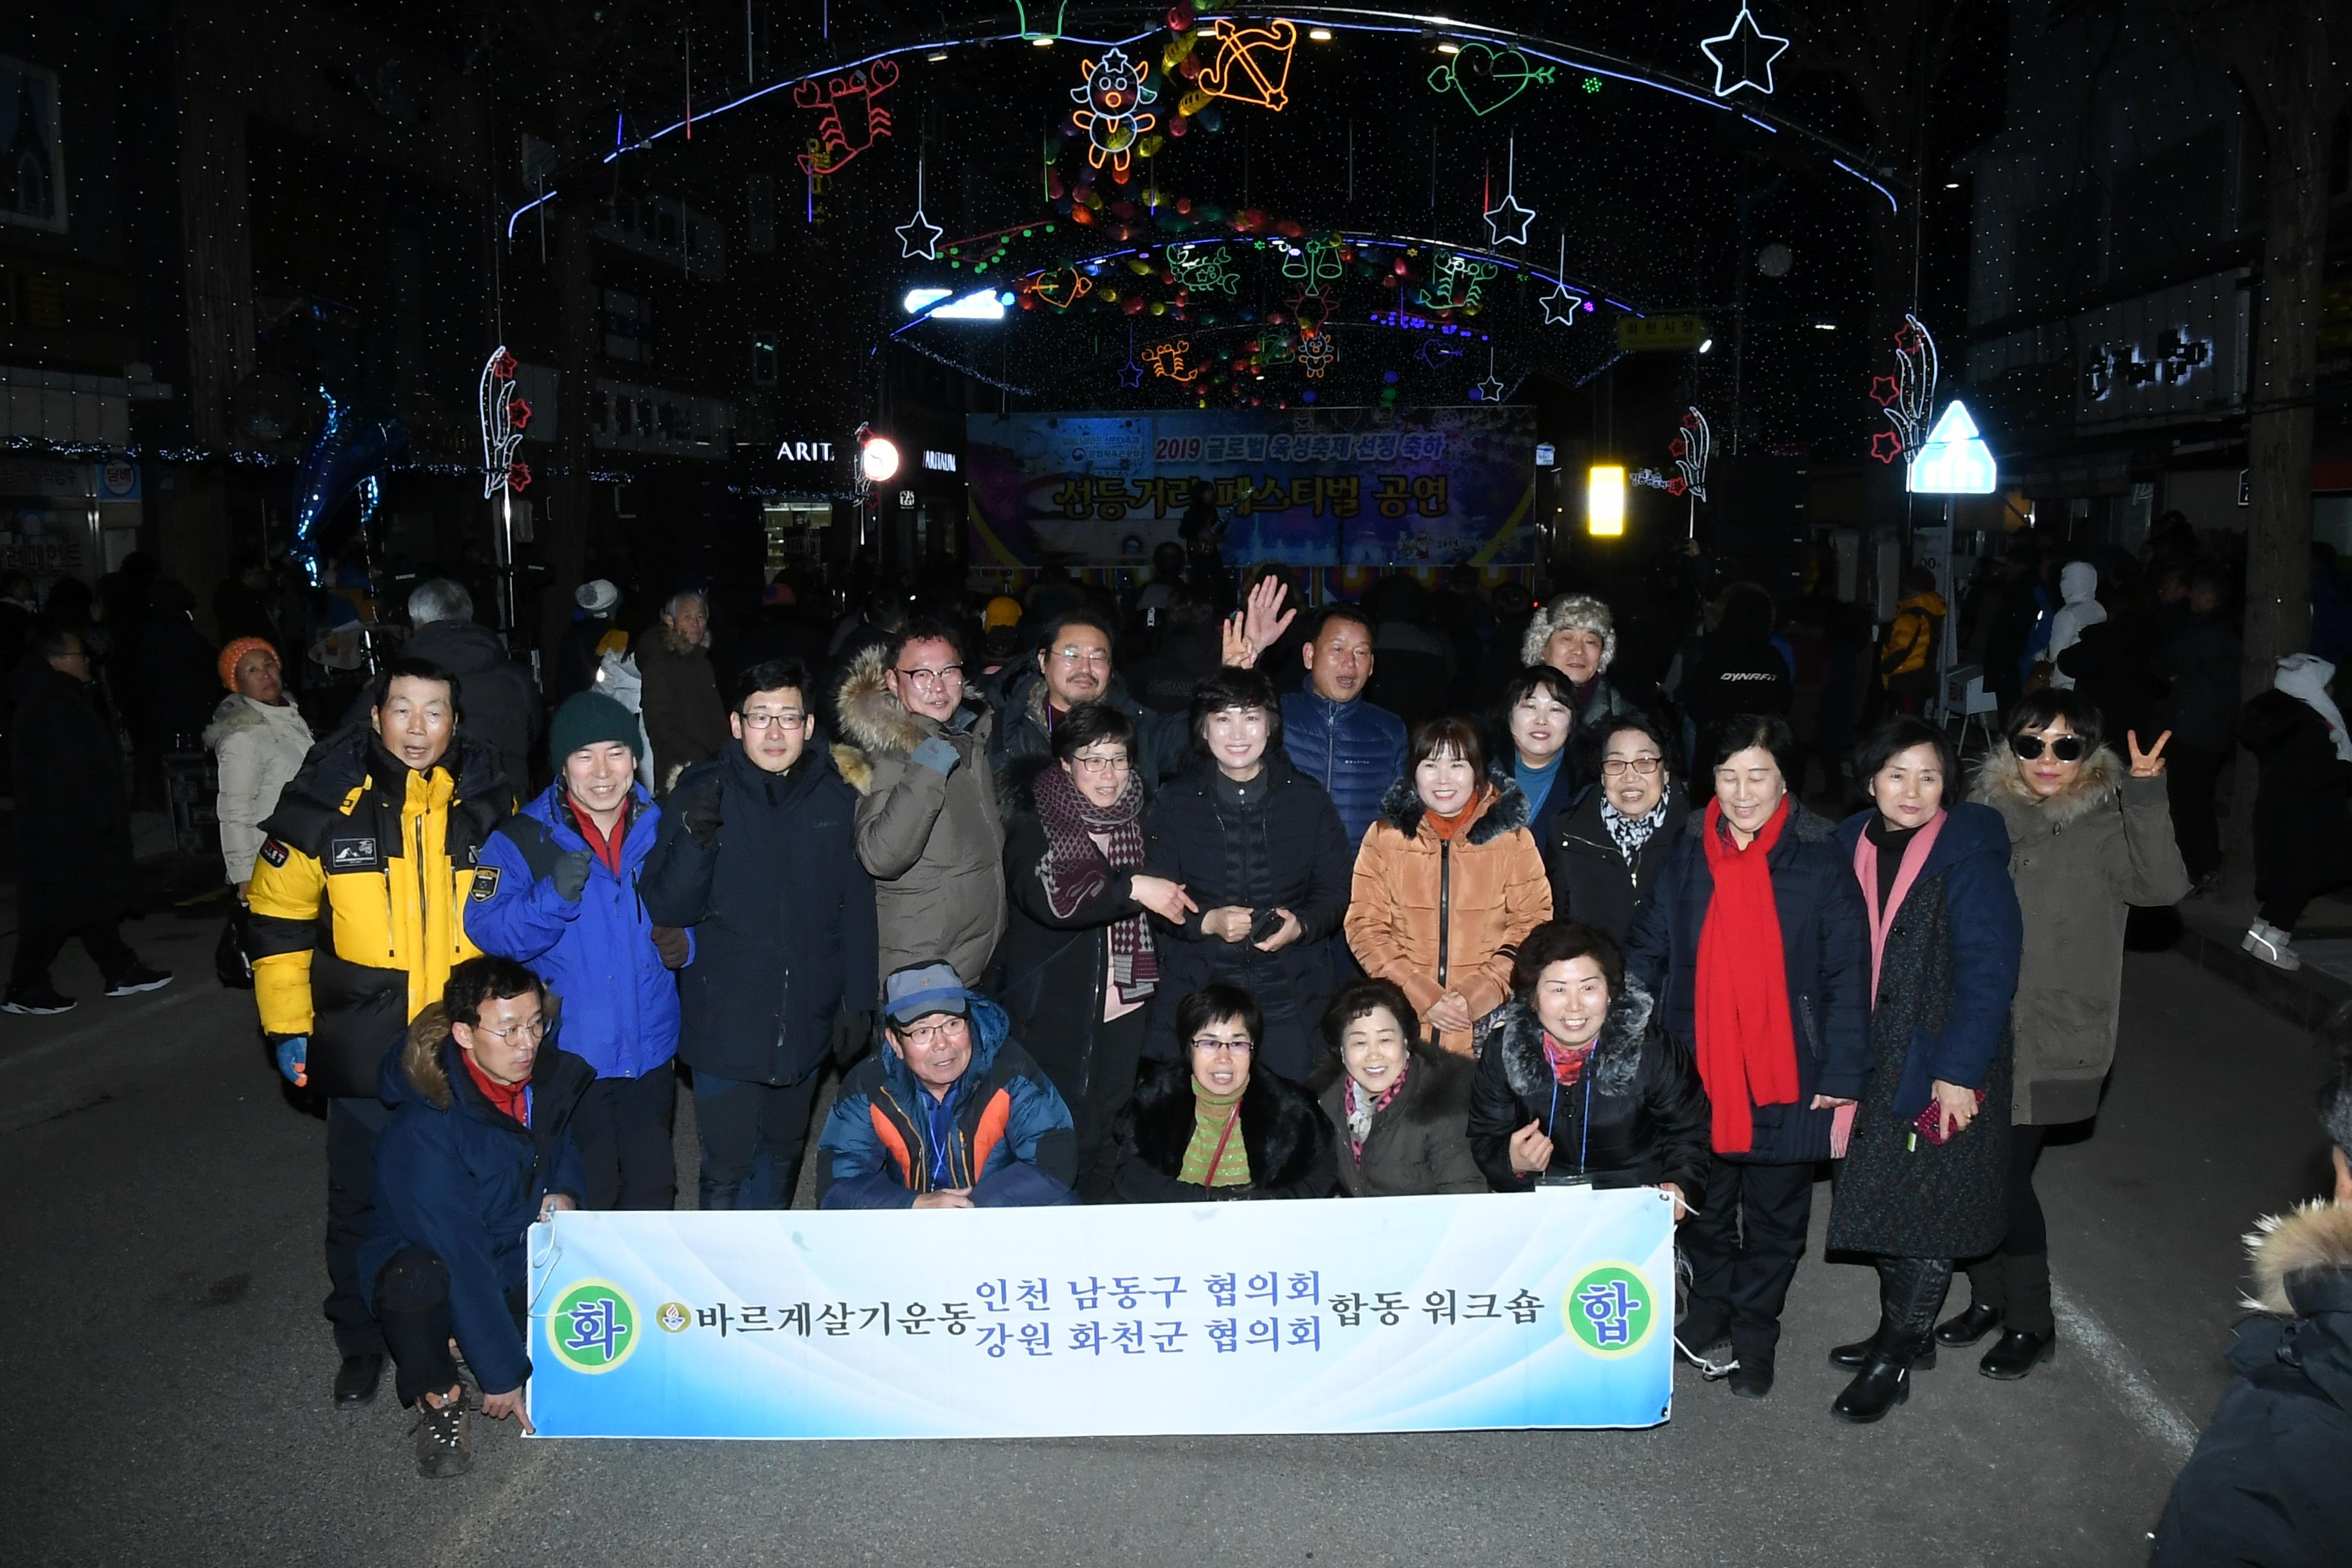 2019 화천산천어축제장 바르기살기운동 인천남동구 협의회 워크숍 사진